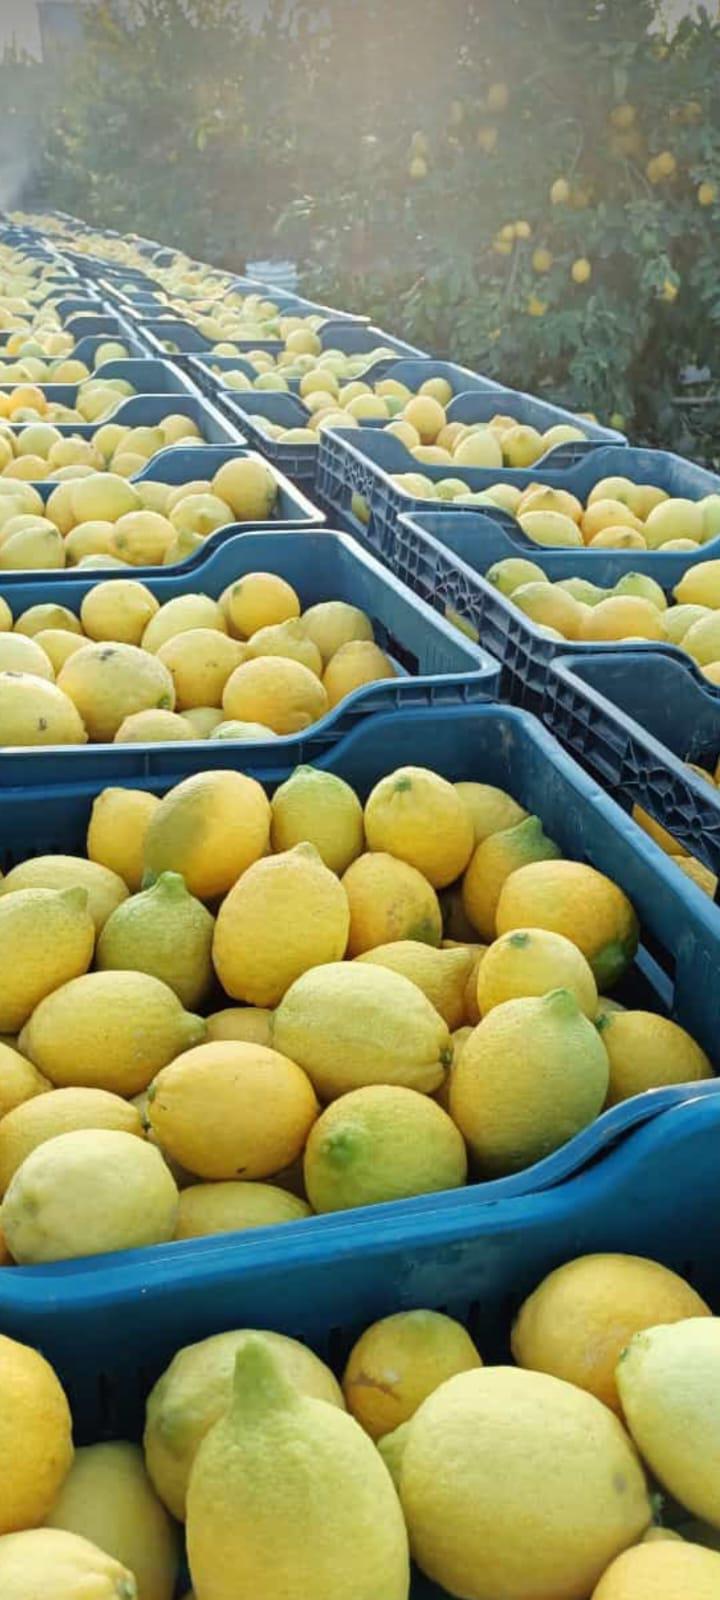 Mersin Akdeniz Satılık Limon